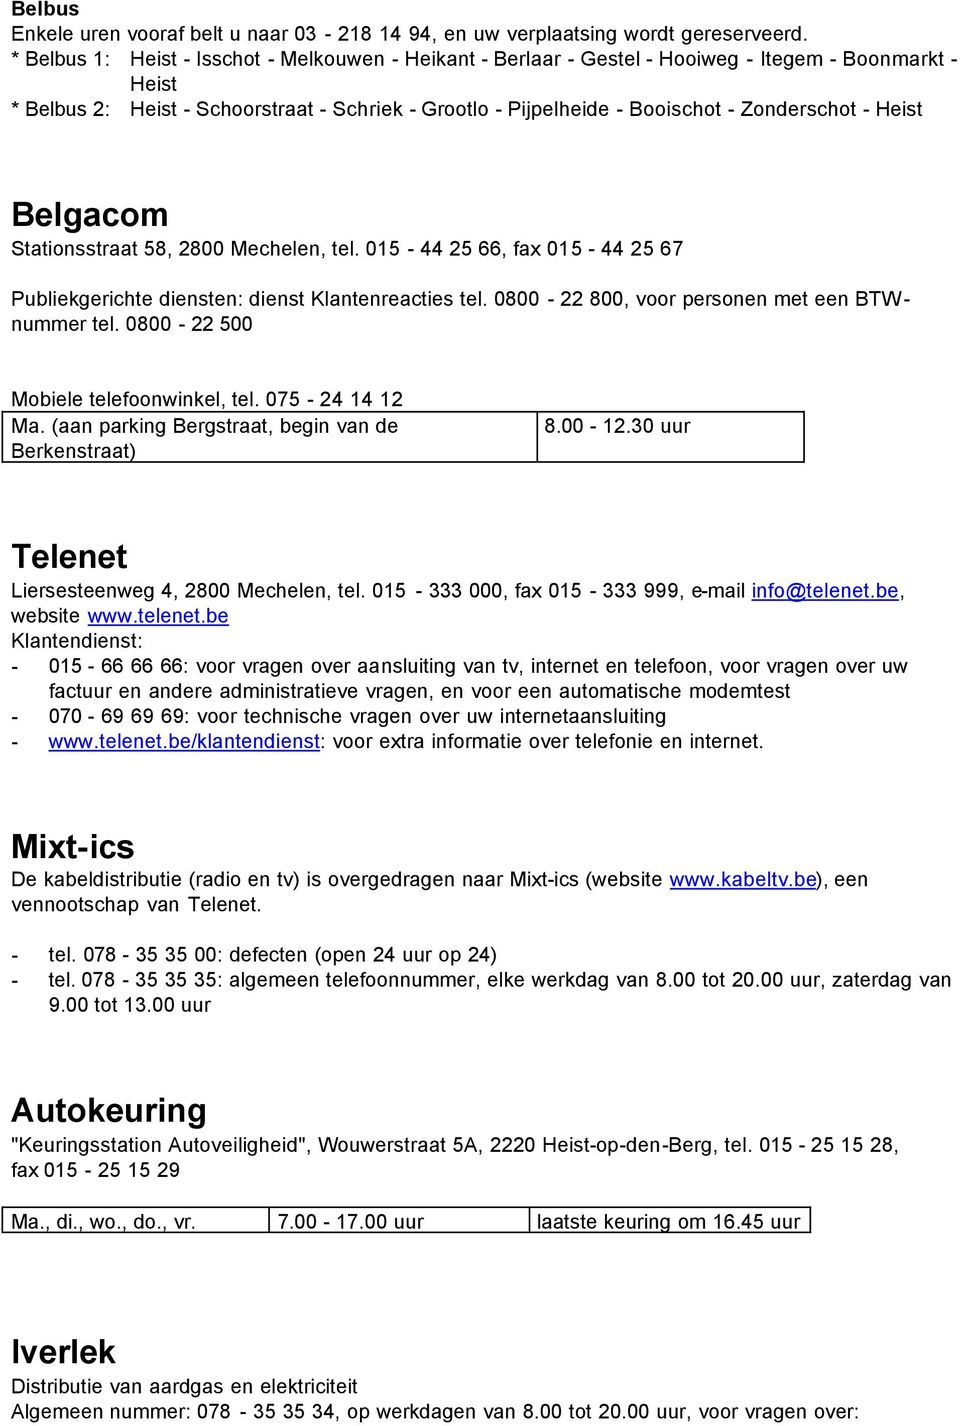 Zonderschot - Heist Belgacom Stationsstraat 58, 2800 Mechelen, tel. 015-44 25 66, fax 015-44 25 67 Publiekgerichte diensten: dienst Klantenreacties tel.